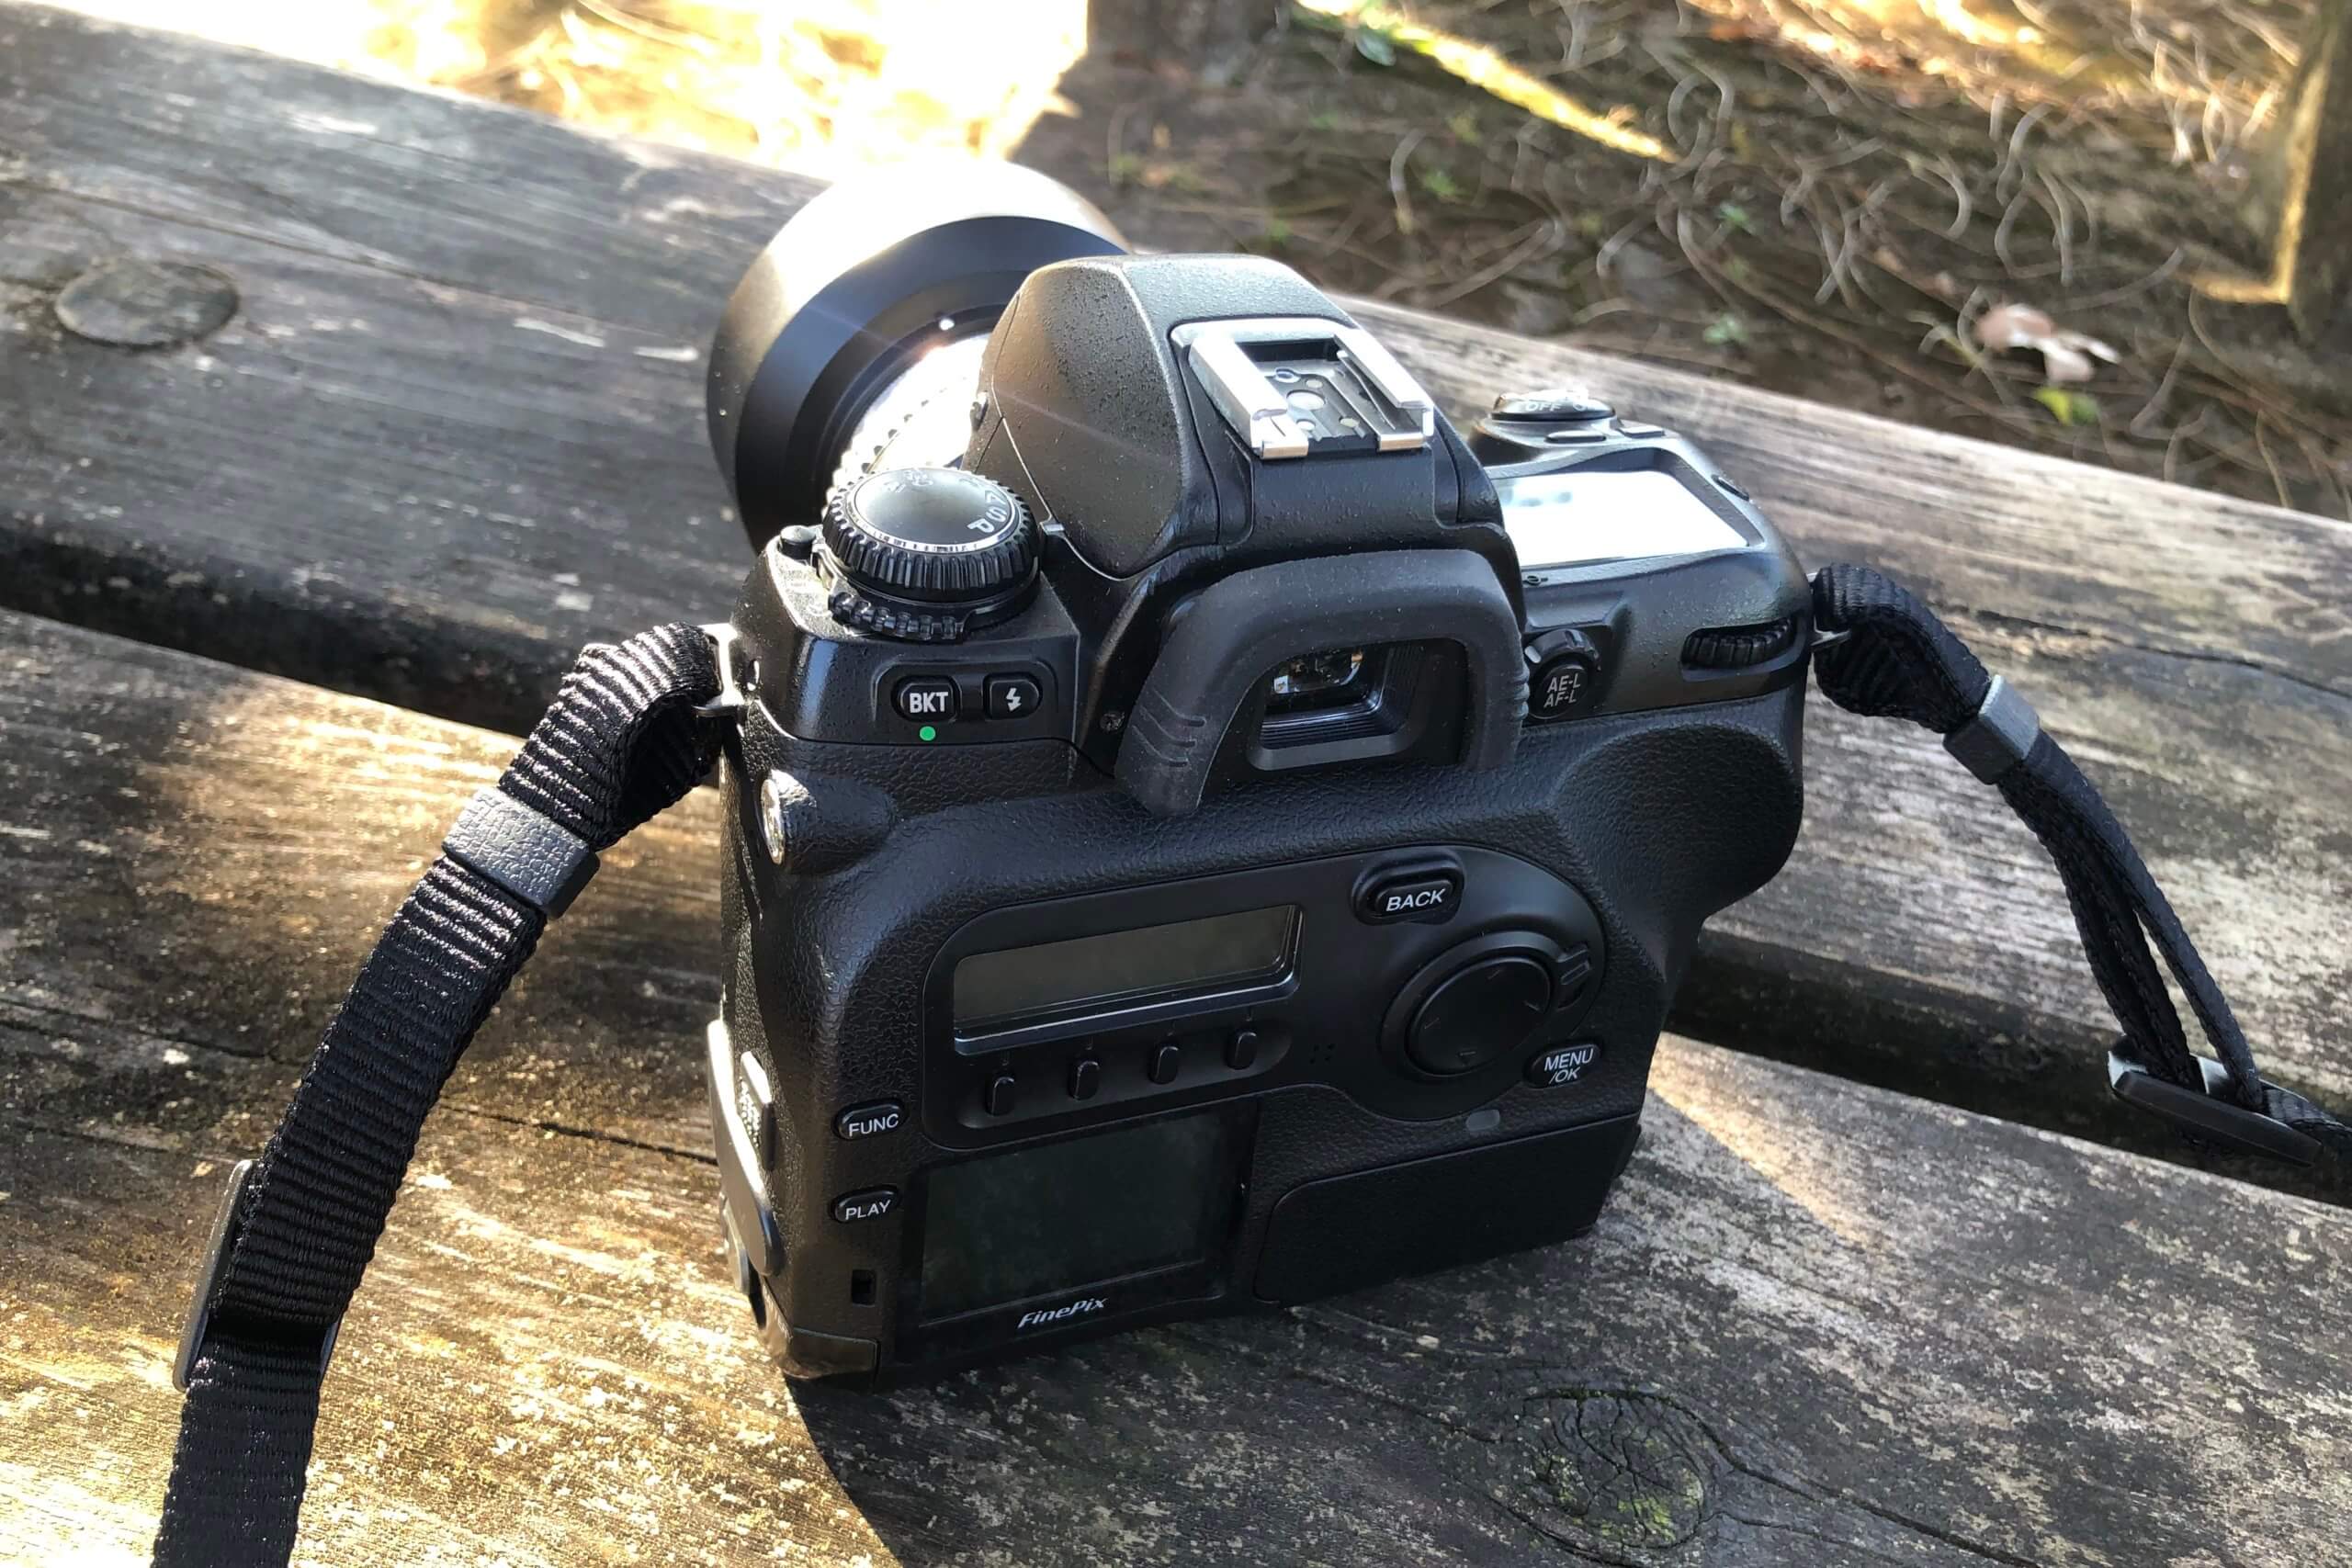 Fujifilm S2 Pro, Sigma 28mm 1.8 + レンズ1本カメラ